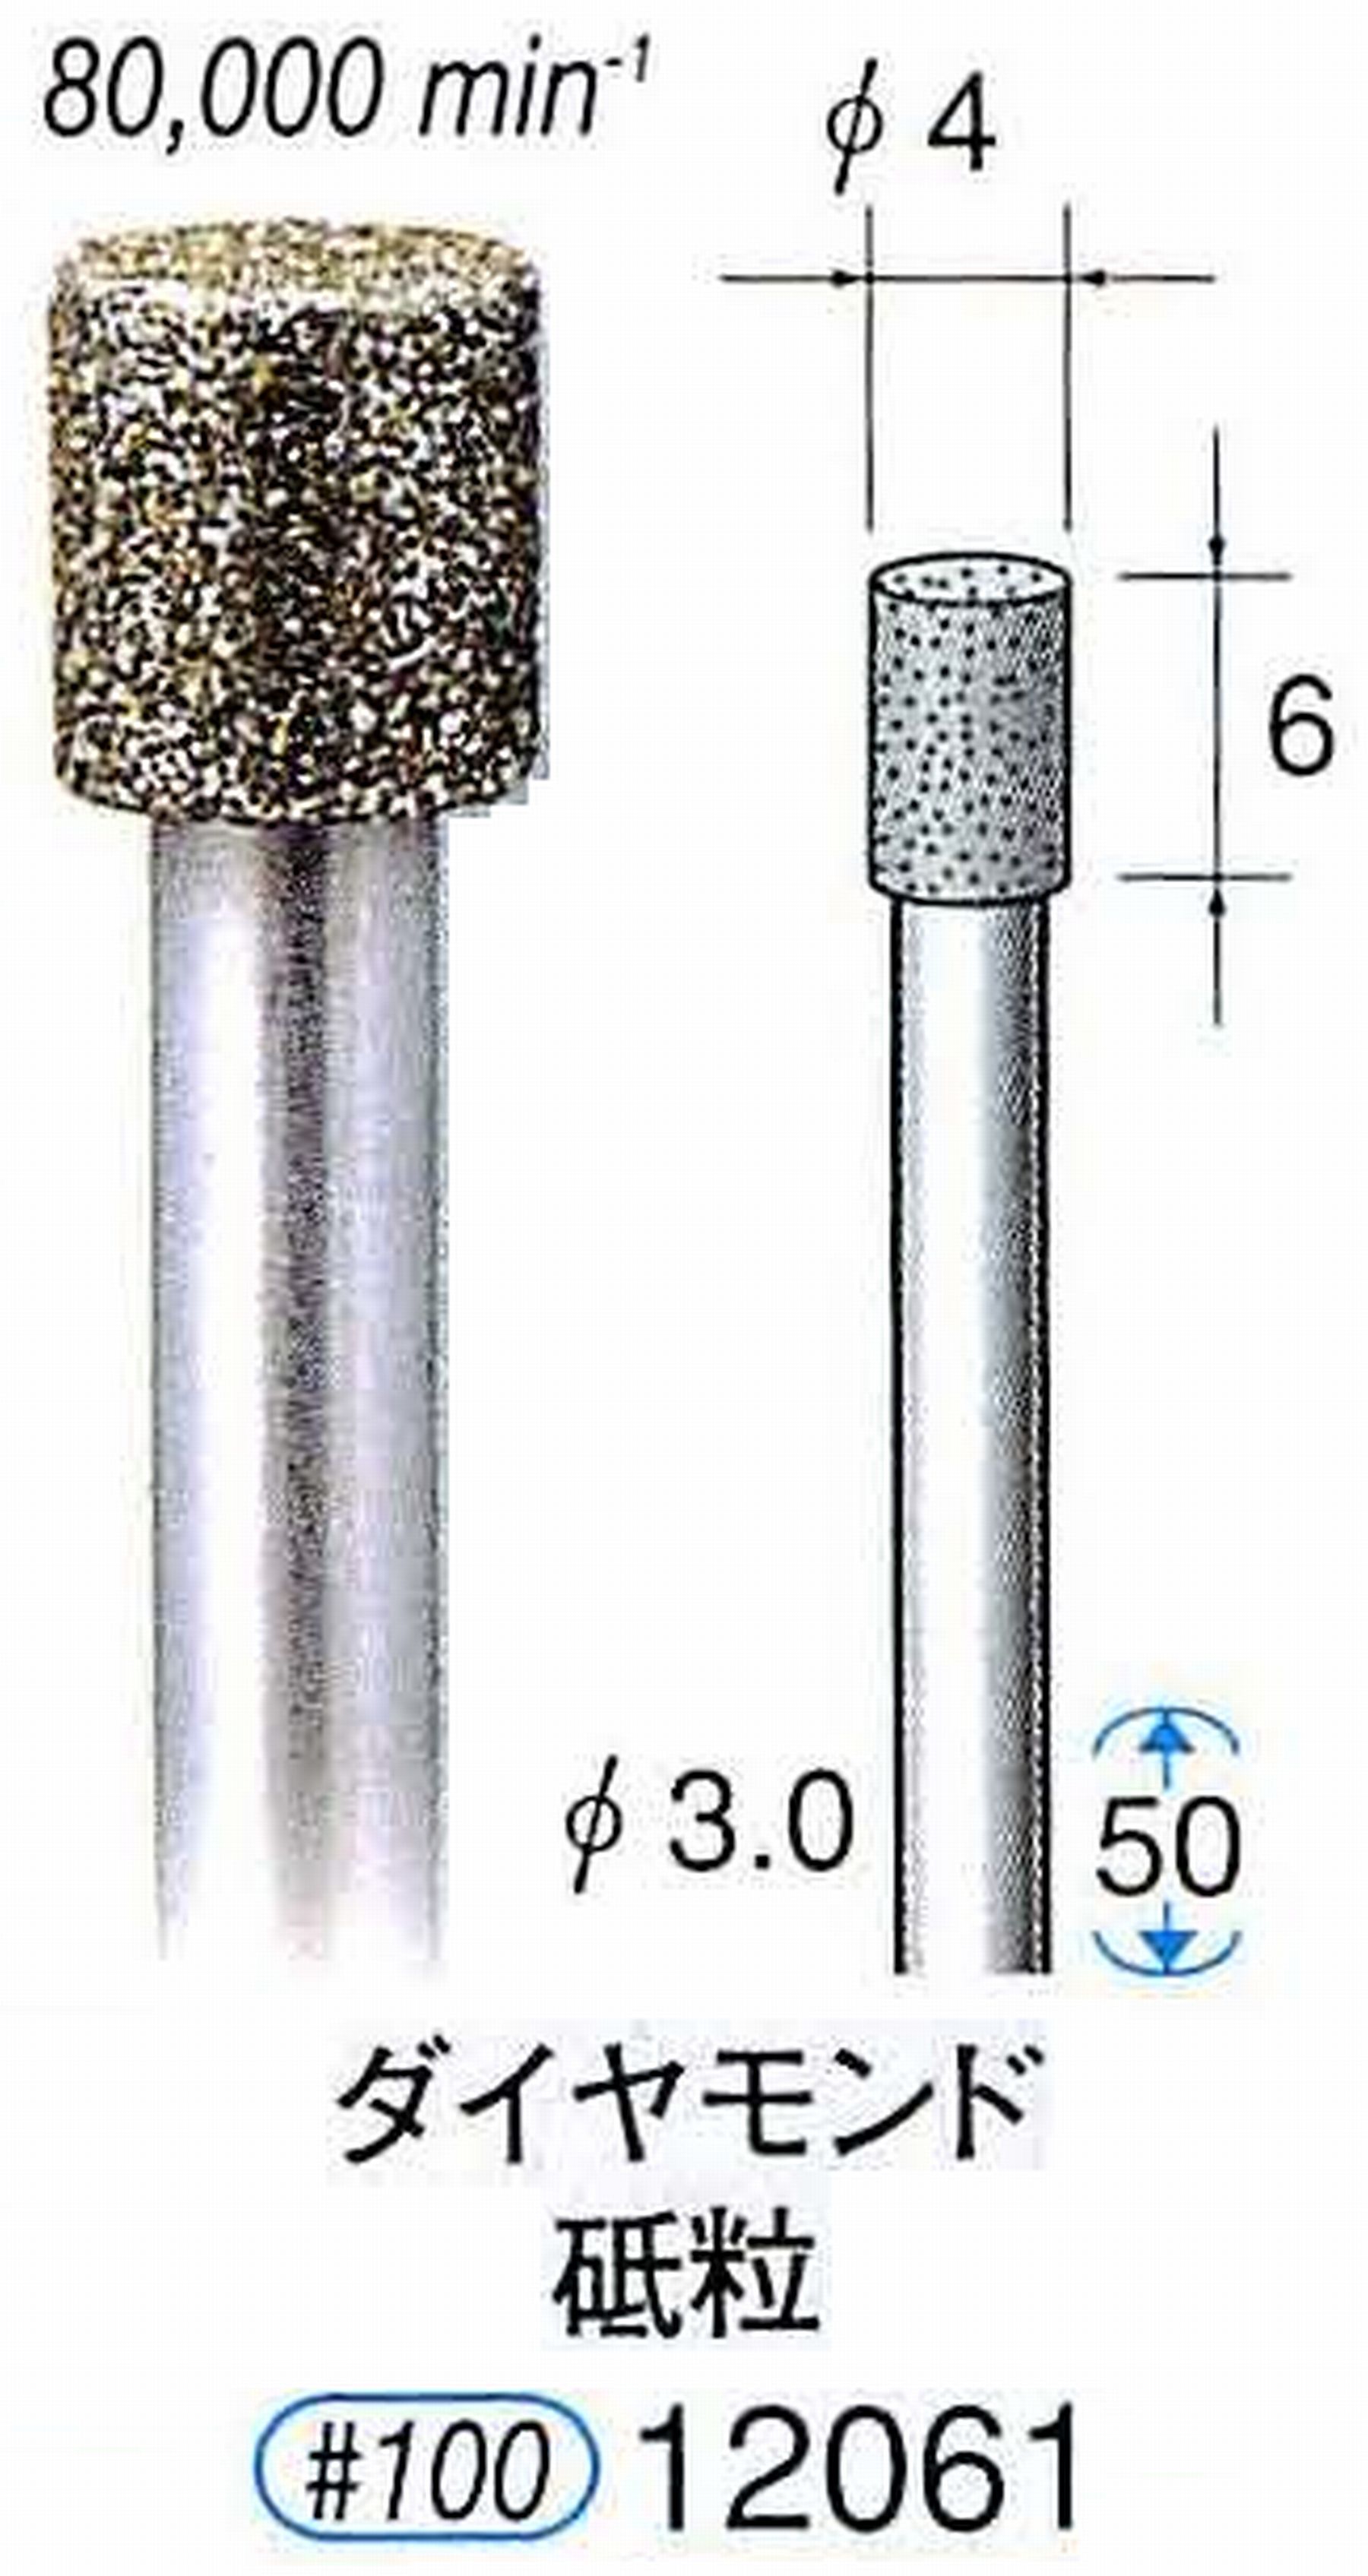 ナカニシ/NAKANISHI 電着ダイヤモンド ダイヤモンド砥粒 軸径(シャンク)φ3.0mm 12061